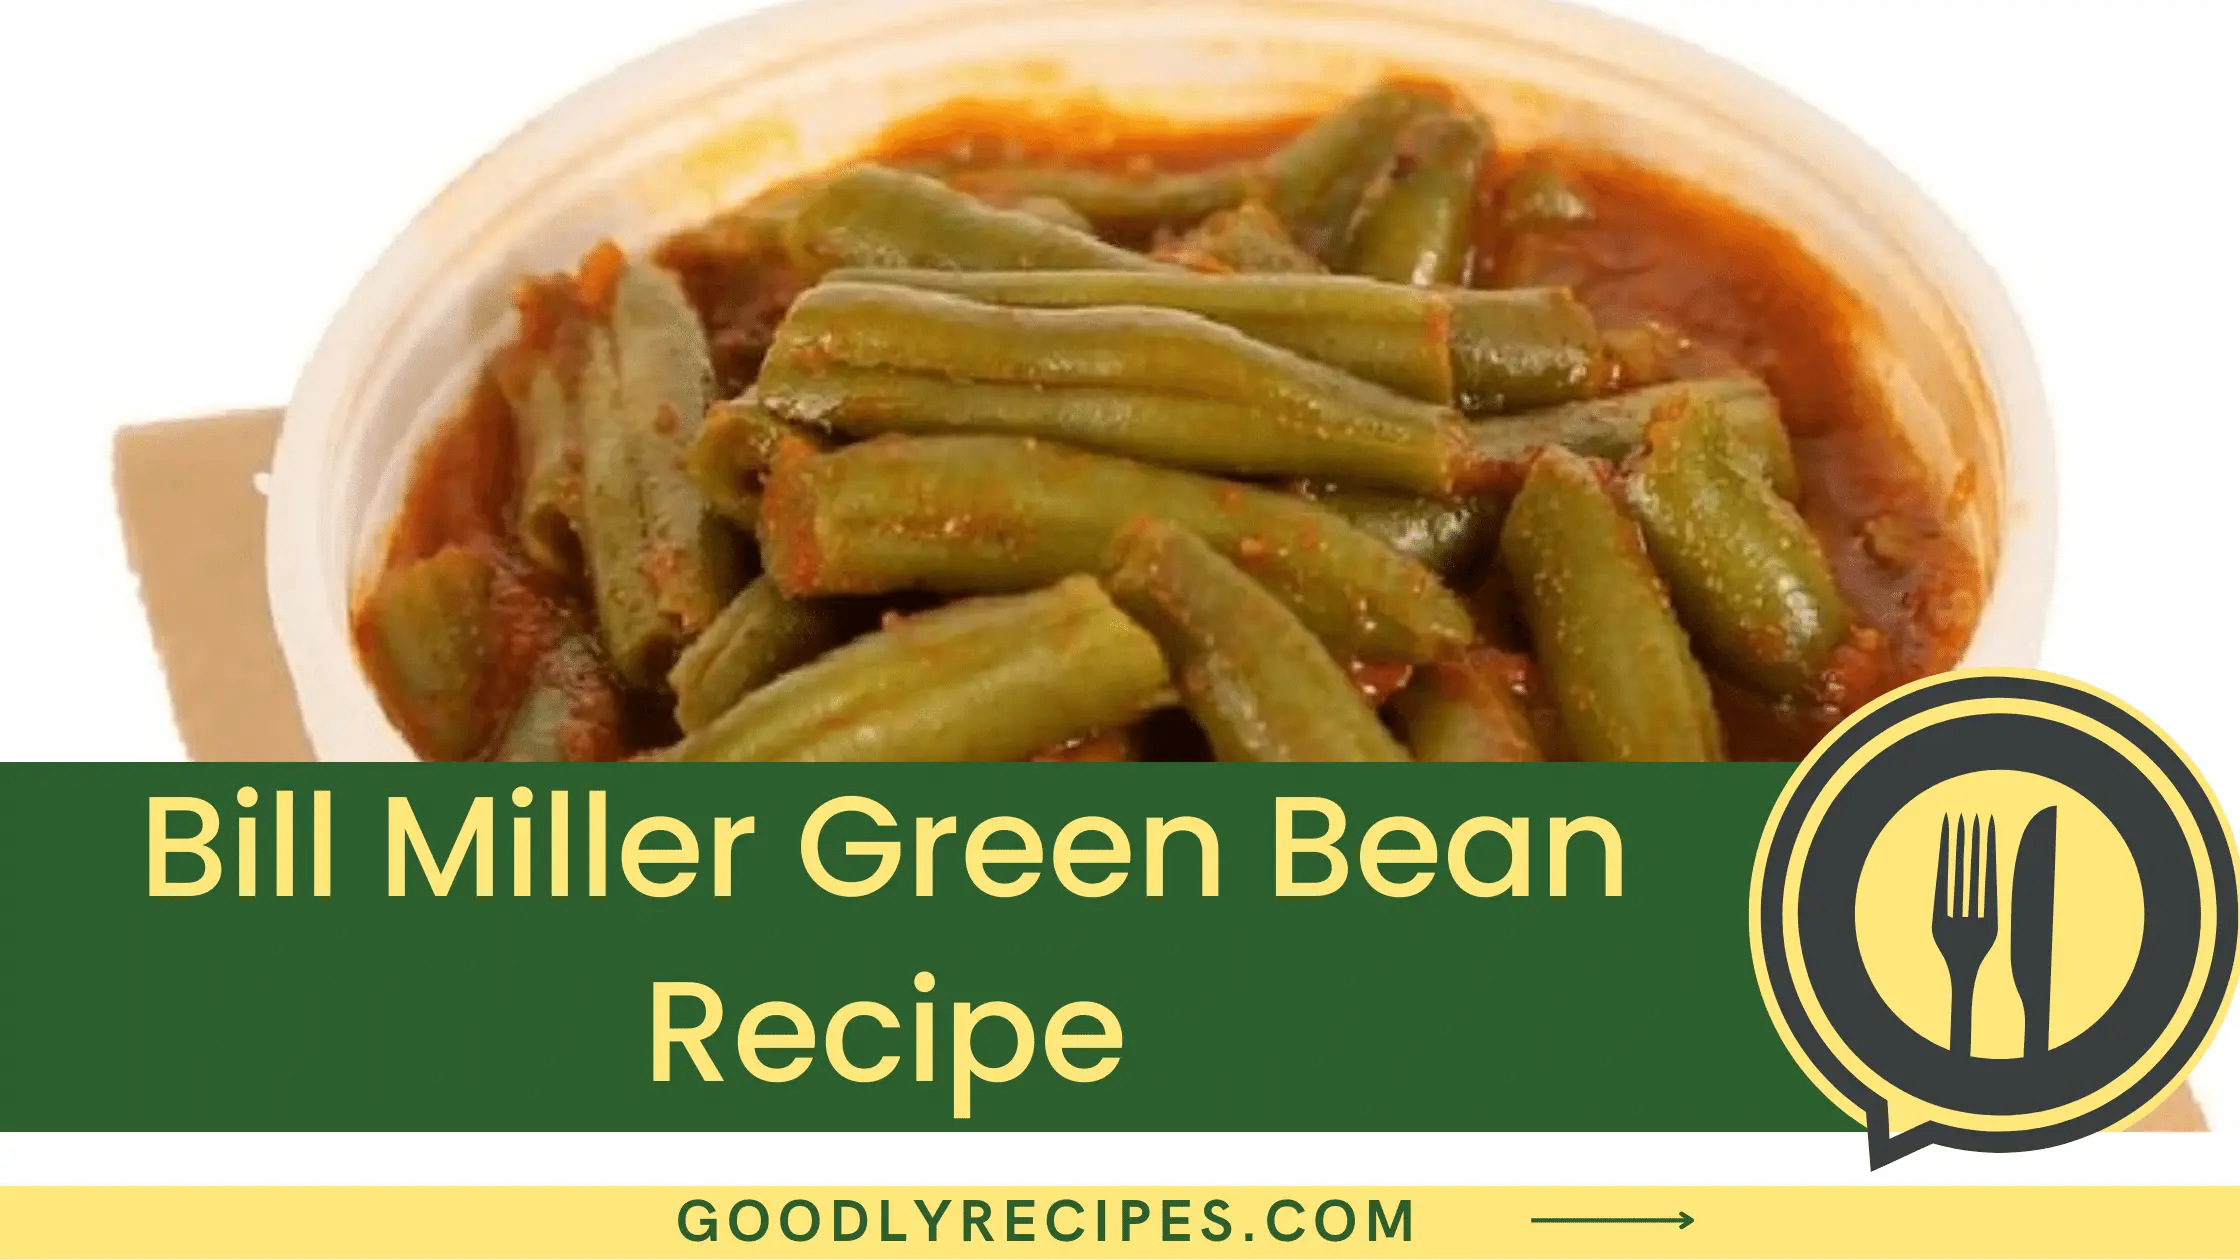 What is Bill Miller Green Bean?